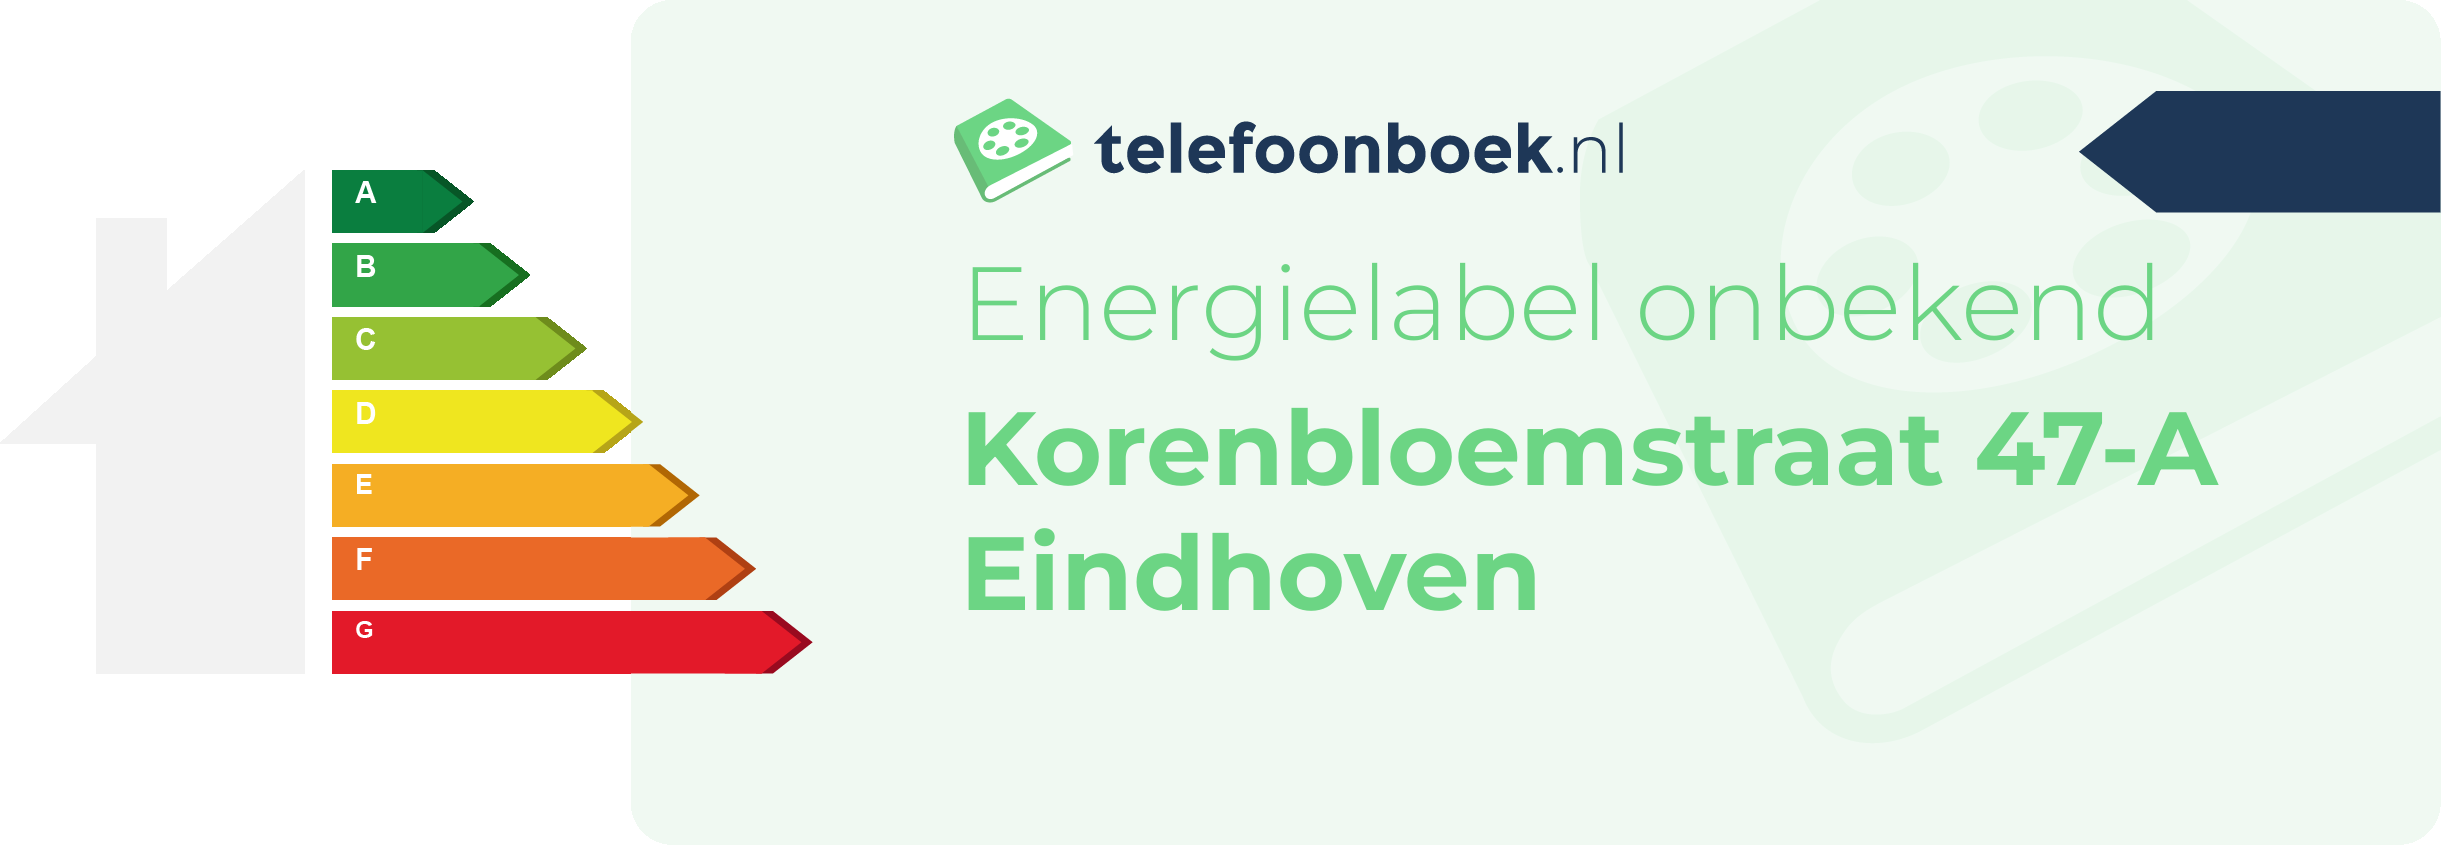 Energielabel Korenbloemstraat 47-A Eindhoven